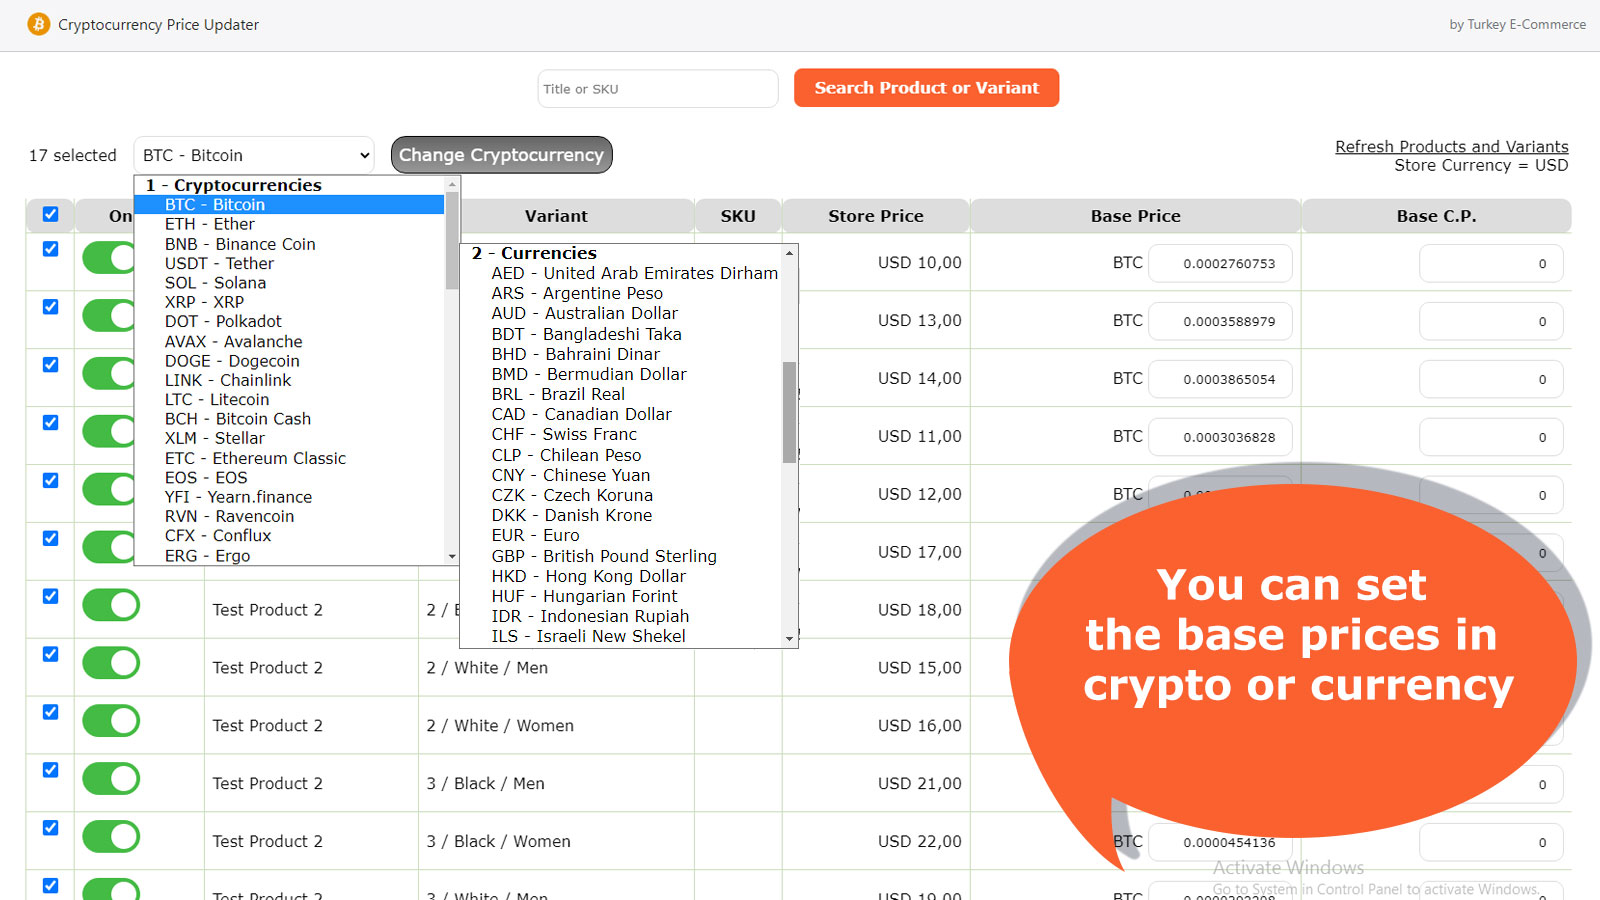 Du kan ställa in baspriserna i krypto eller valuta per produkt